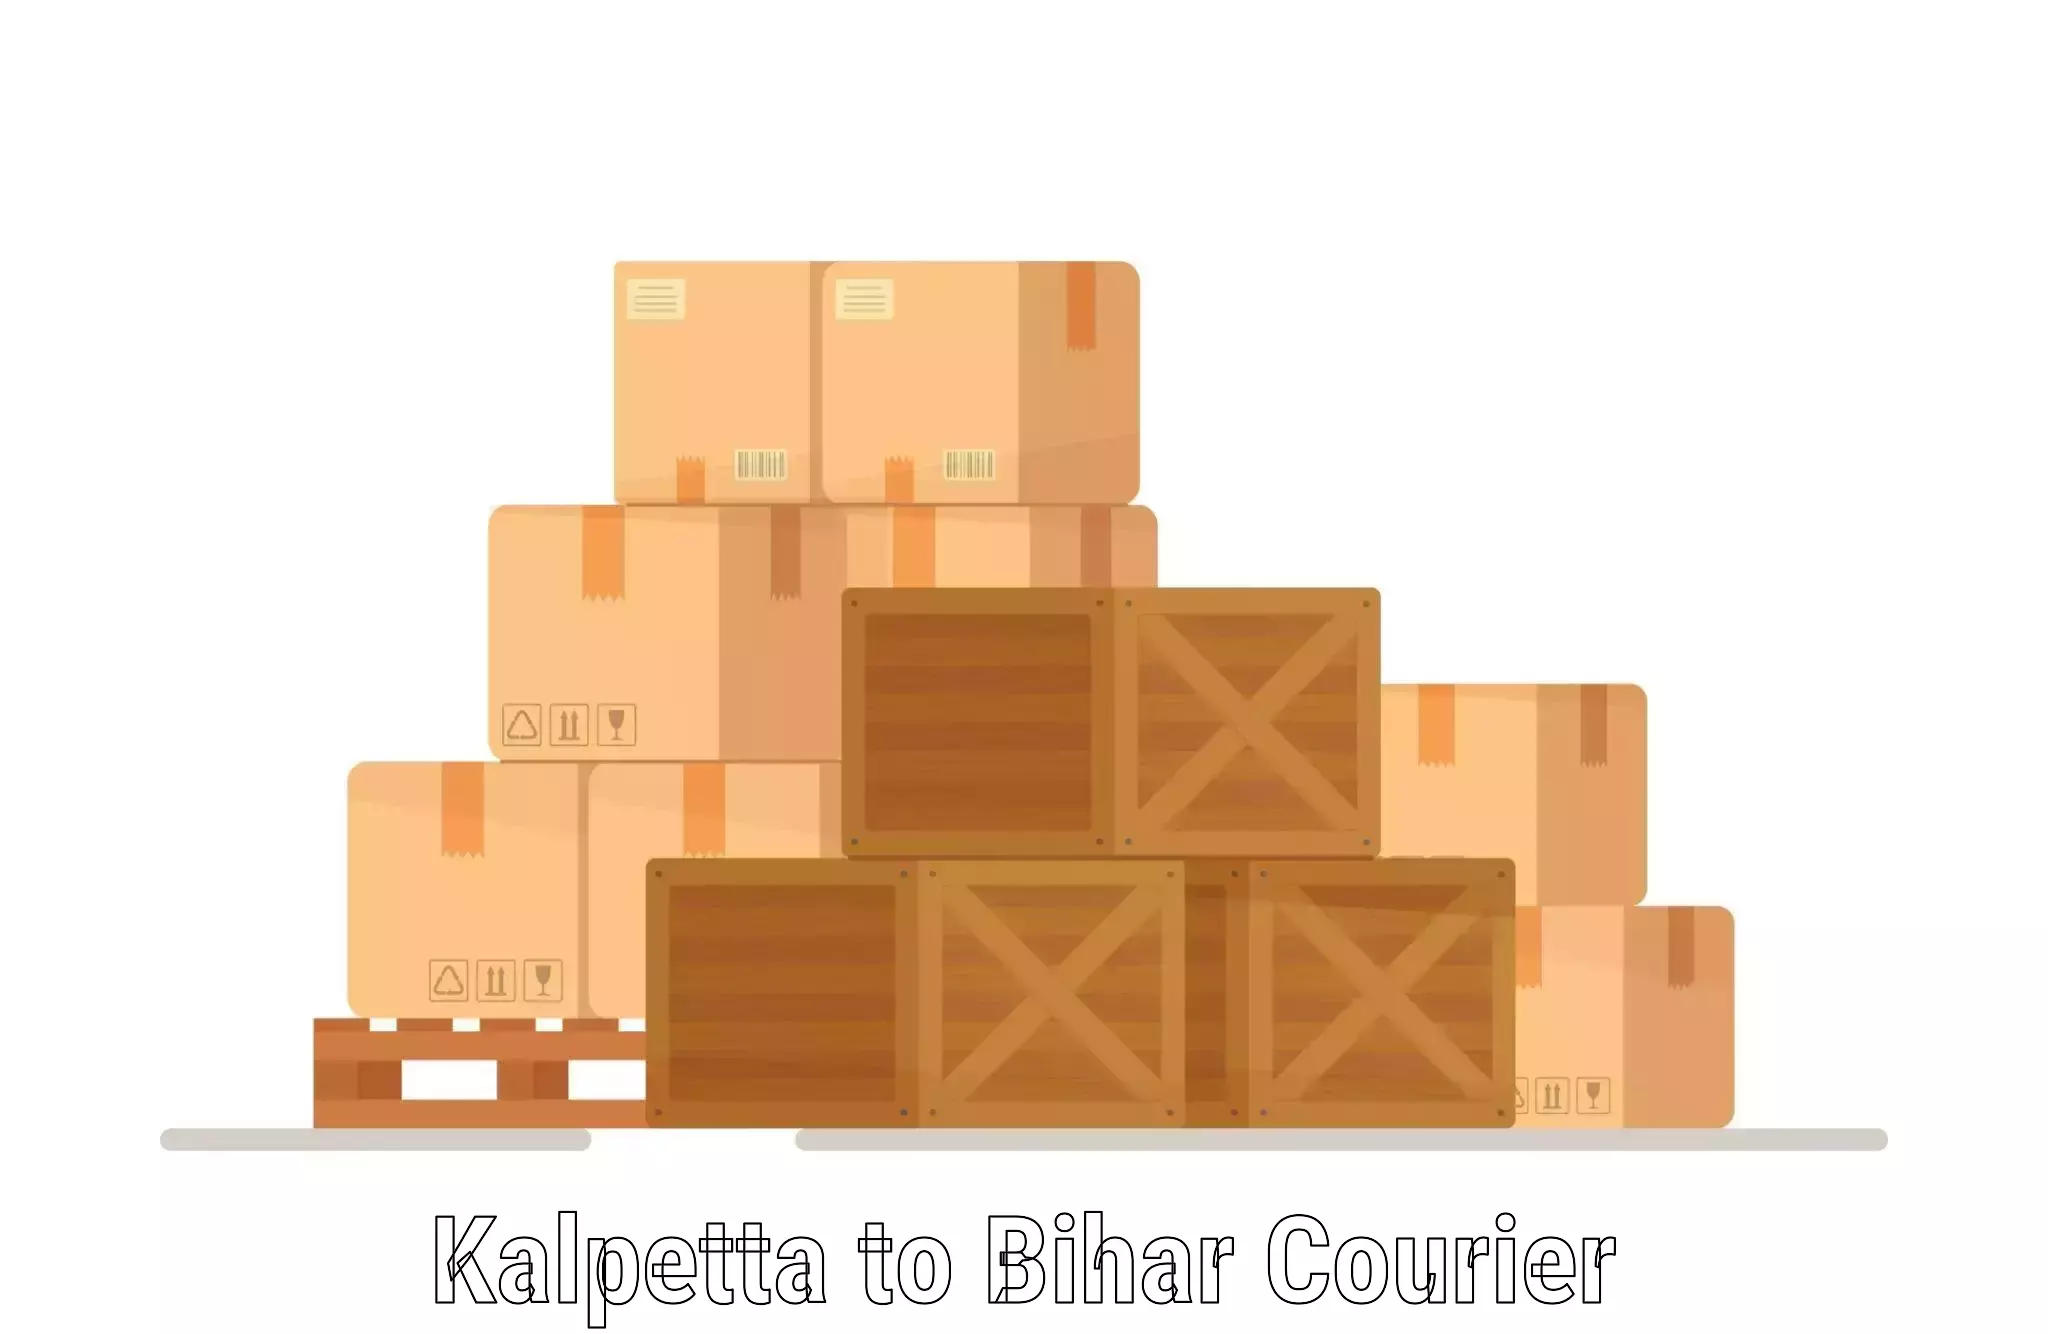 State-of-the-art courier technology Kalpetta to Bihar